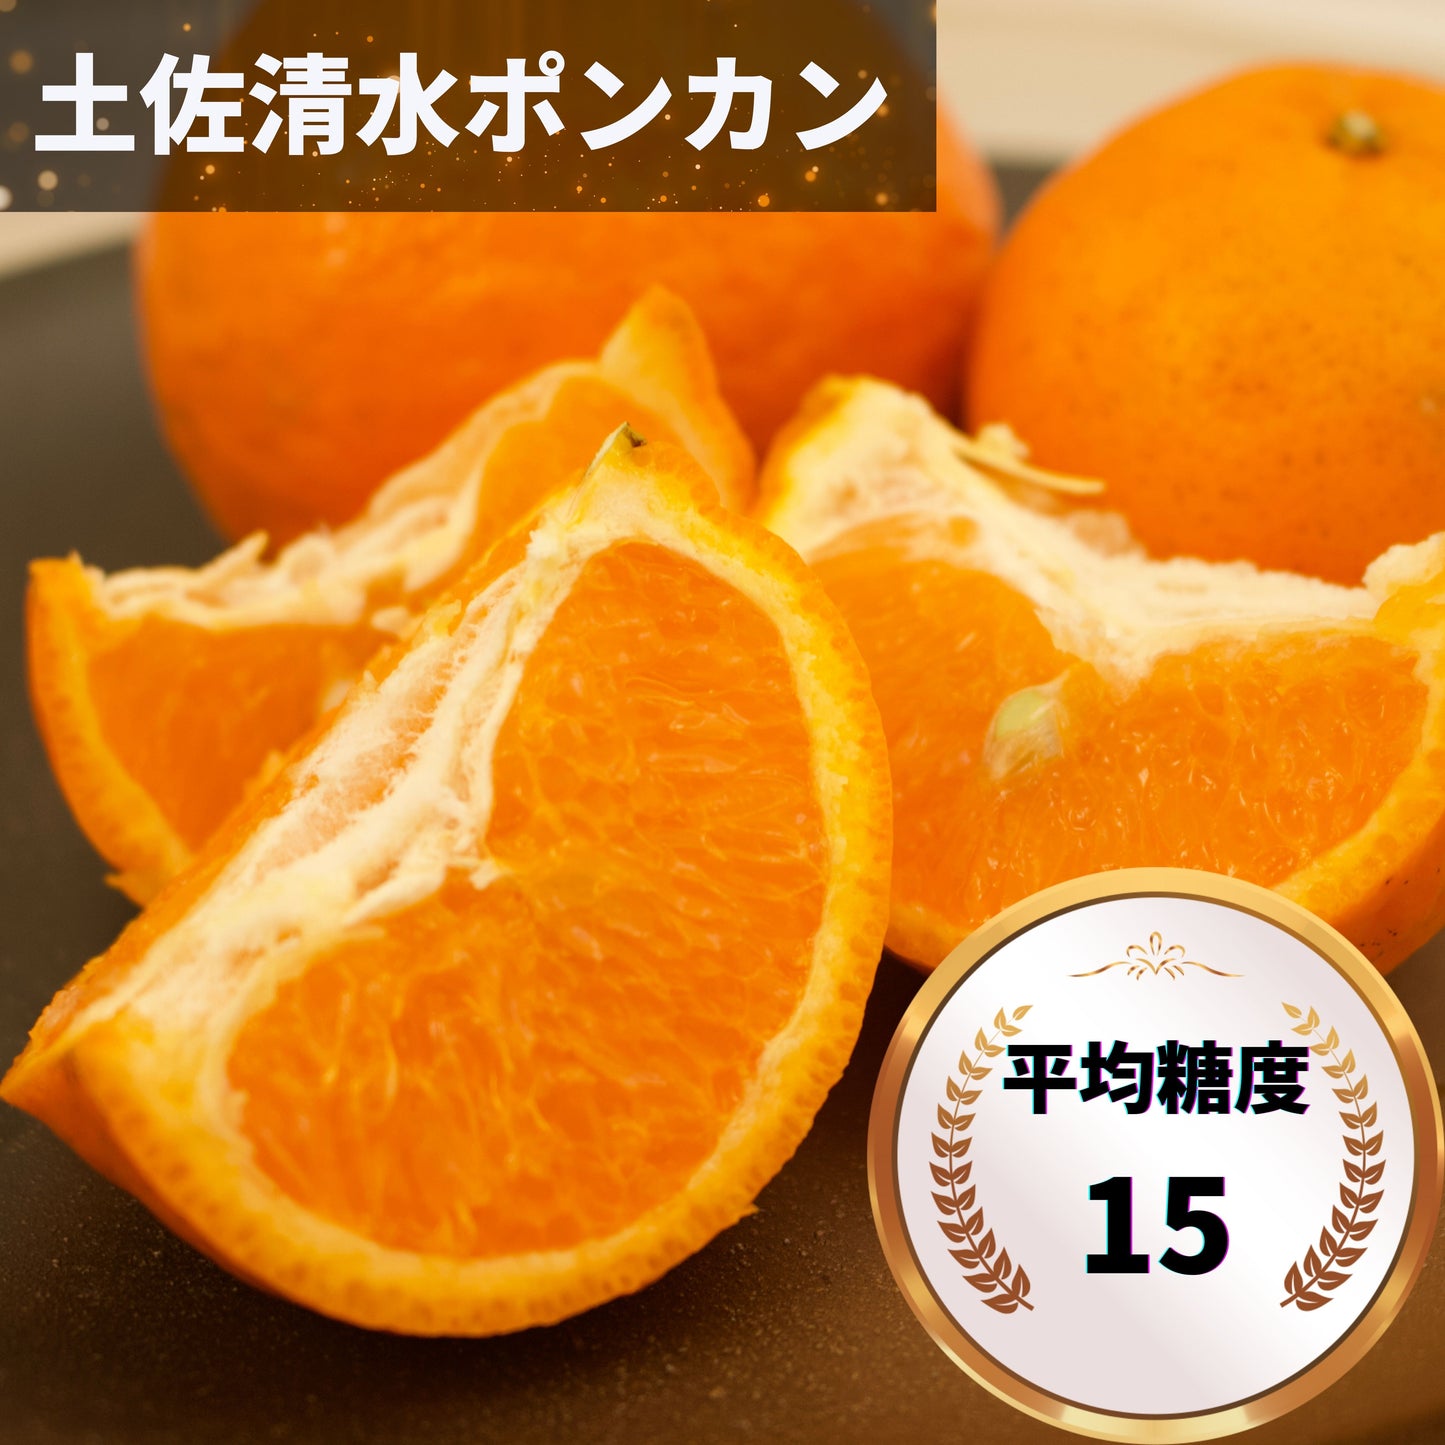 柑橘3種セット